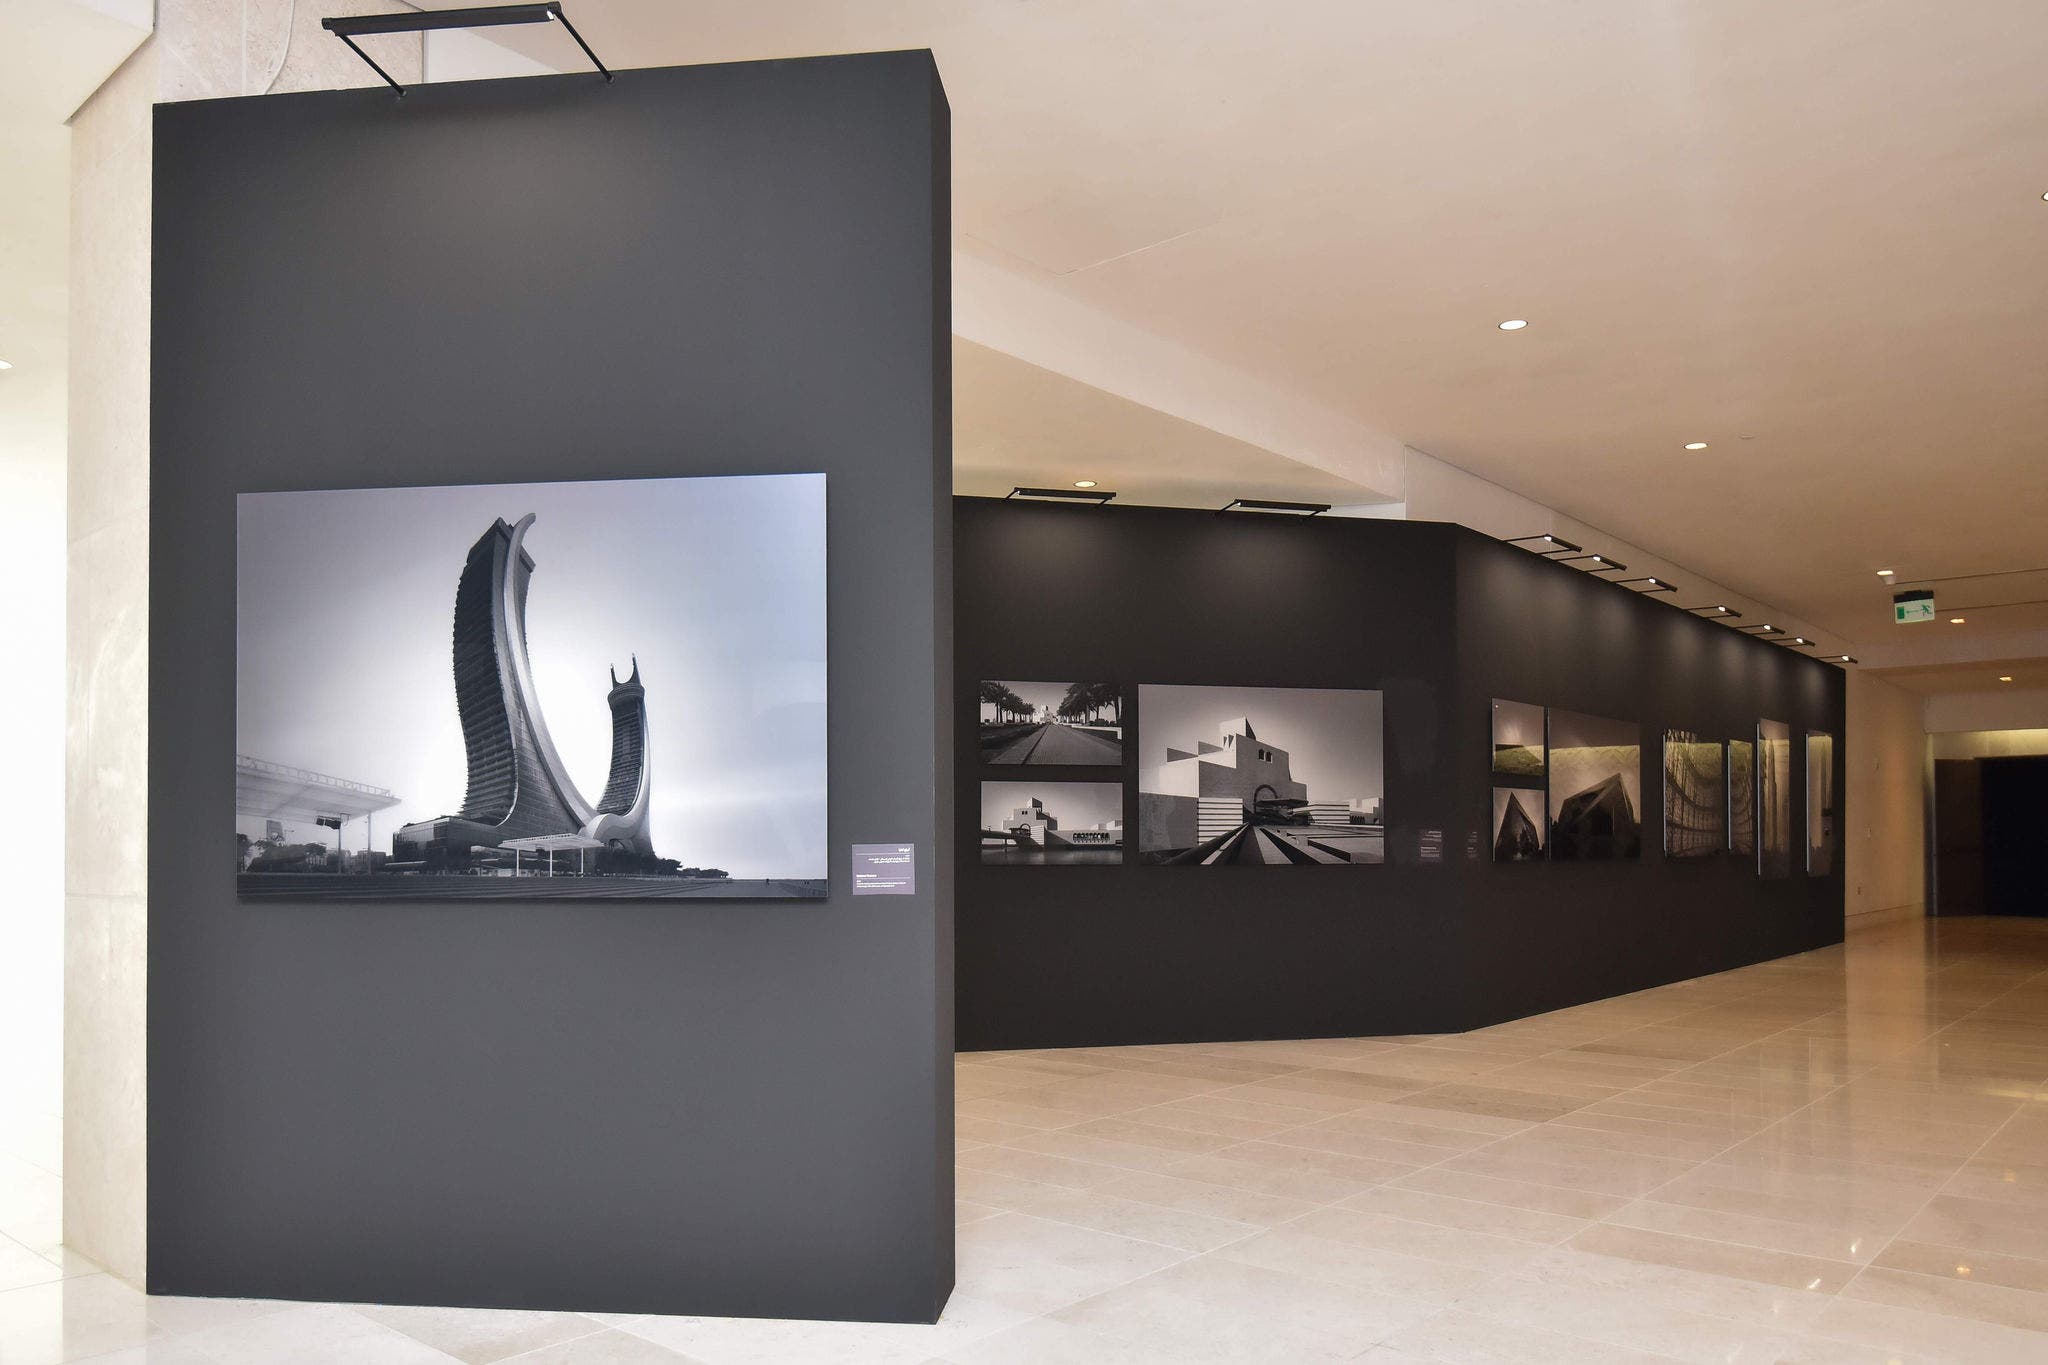 معرض "عصر العمارة الحديثة في قطر"